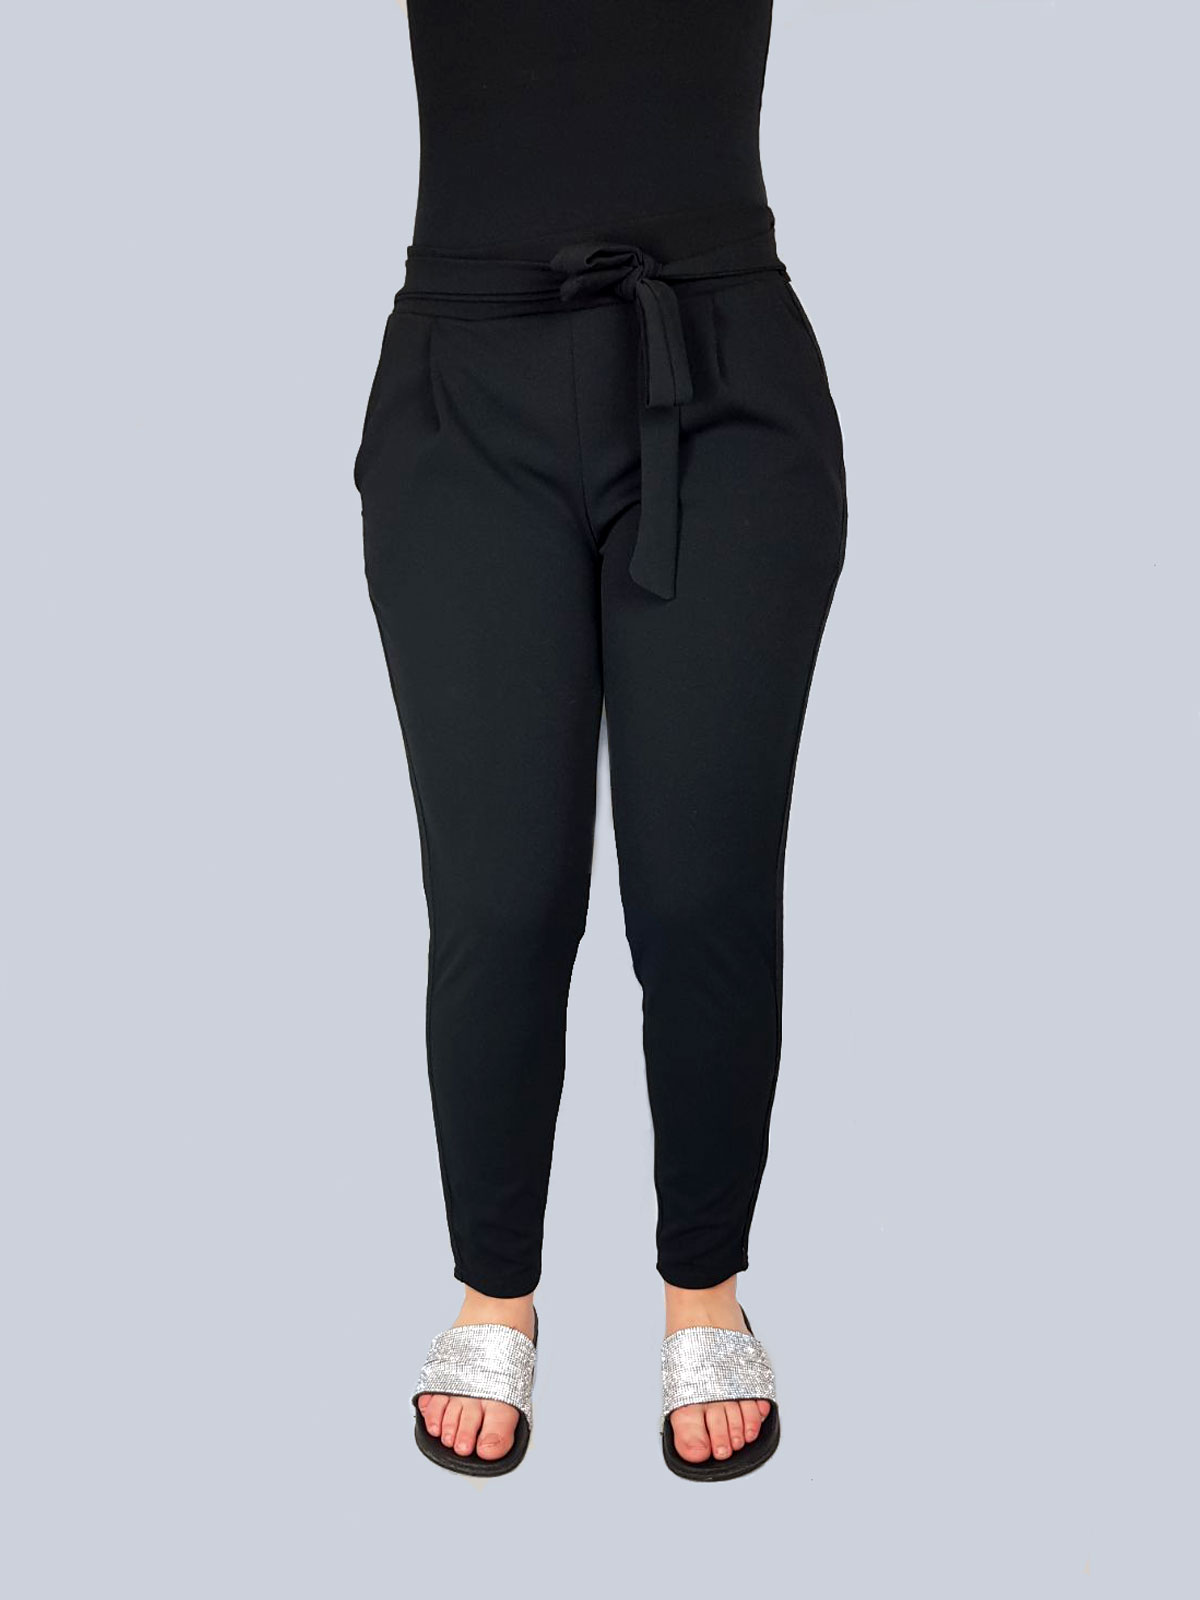 Zwart Broek Met Strik En Witte Strepen - Dames Broeken - Mode